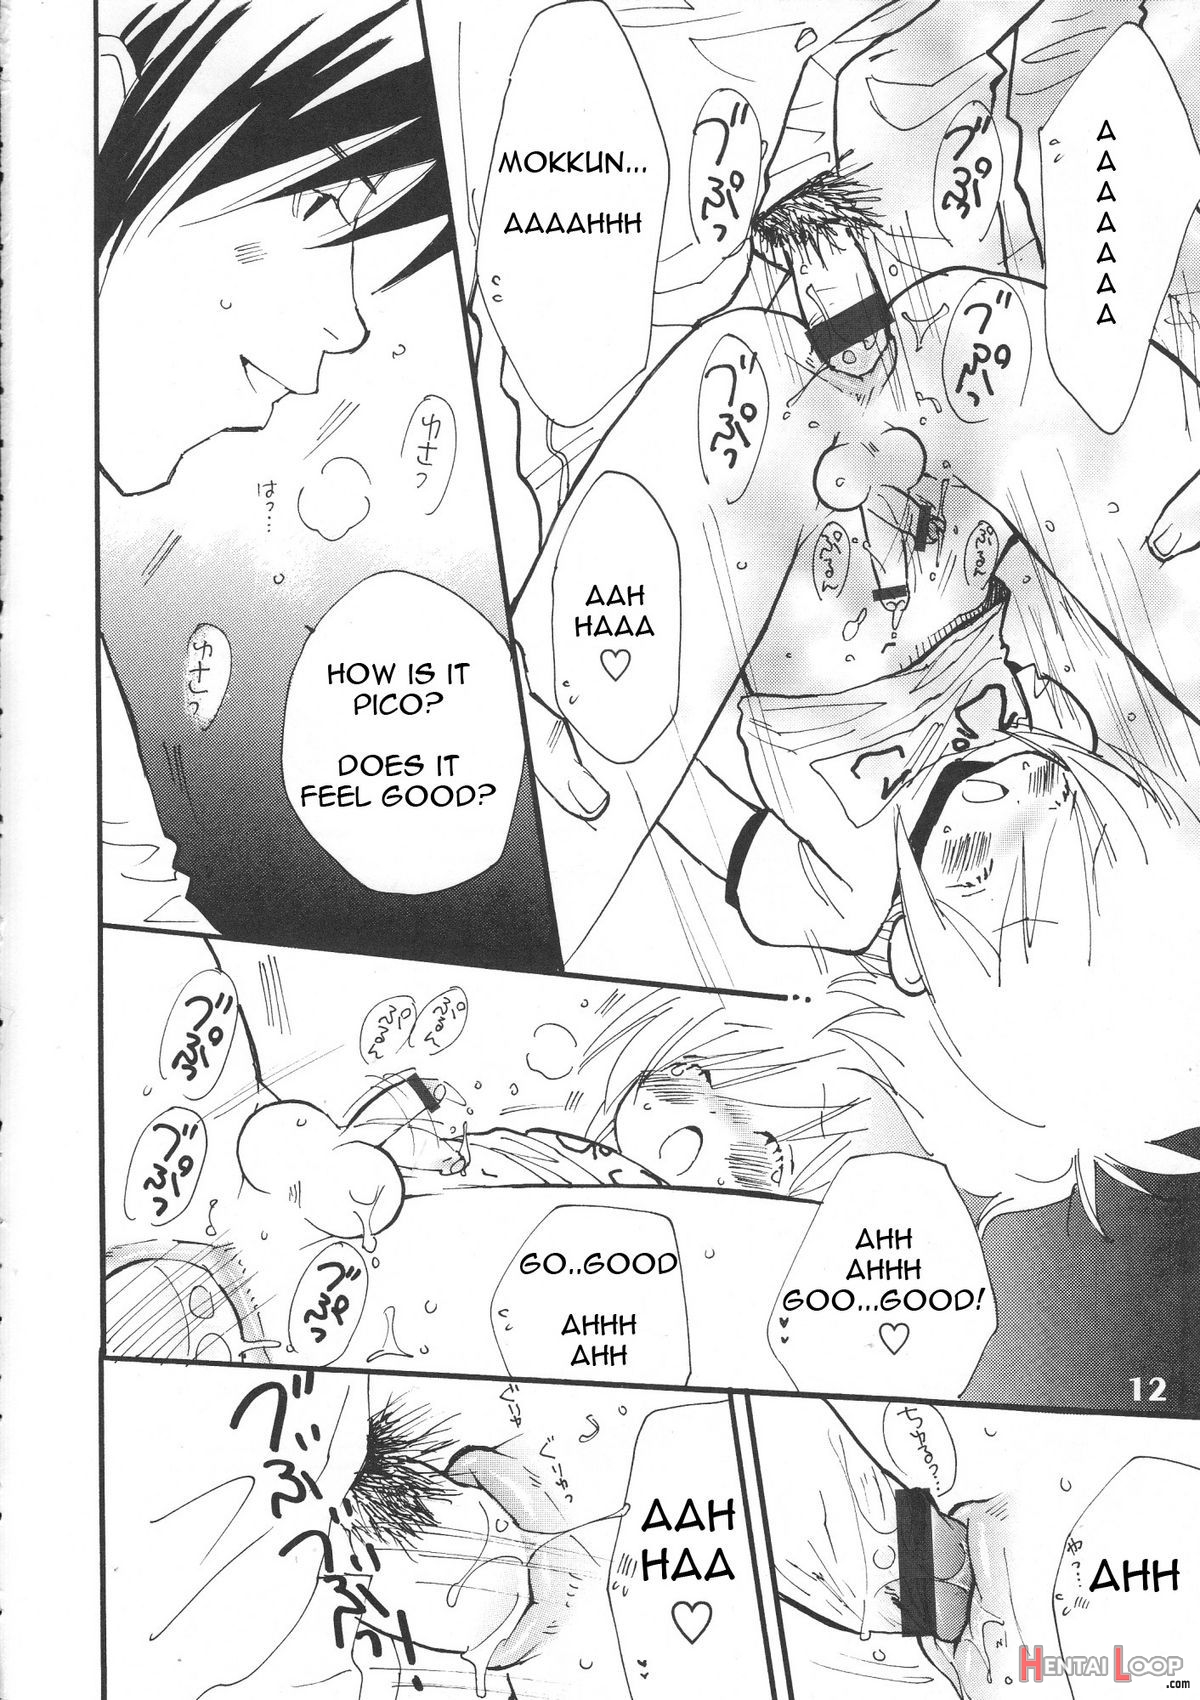 Bokutachi! Shotappuru!! page 12